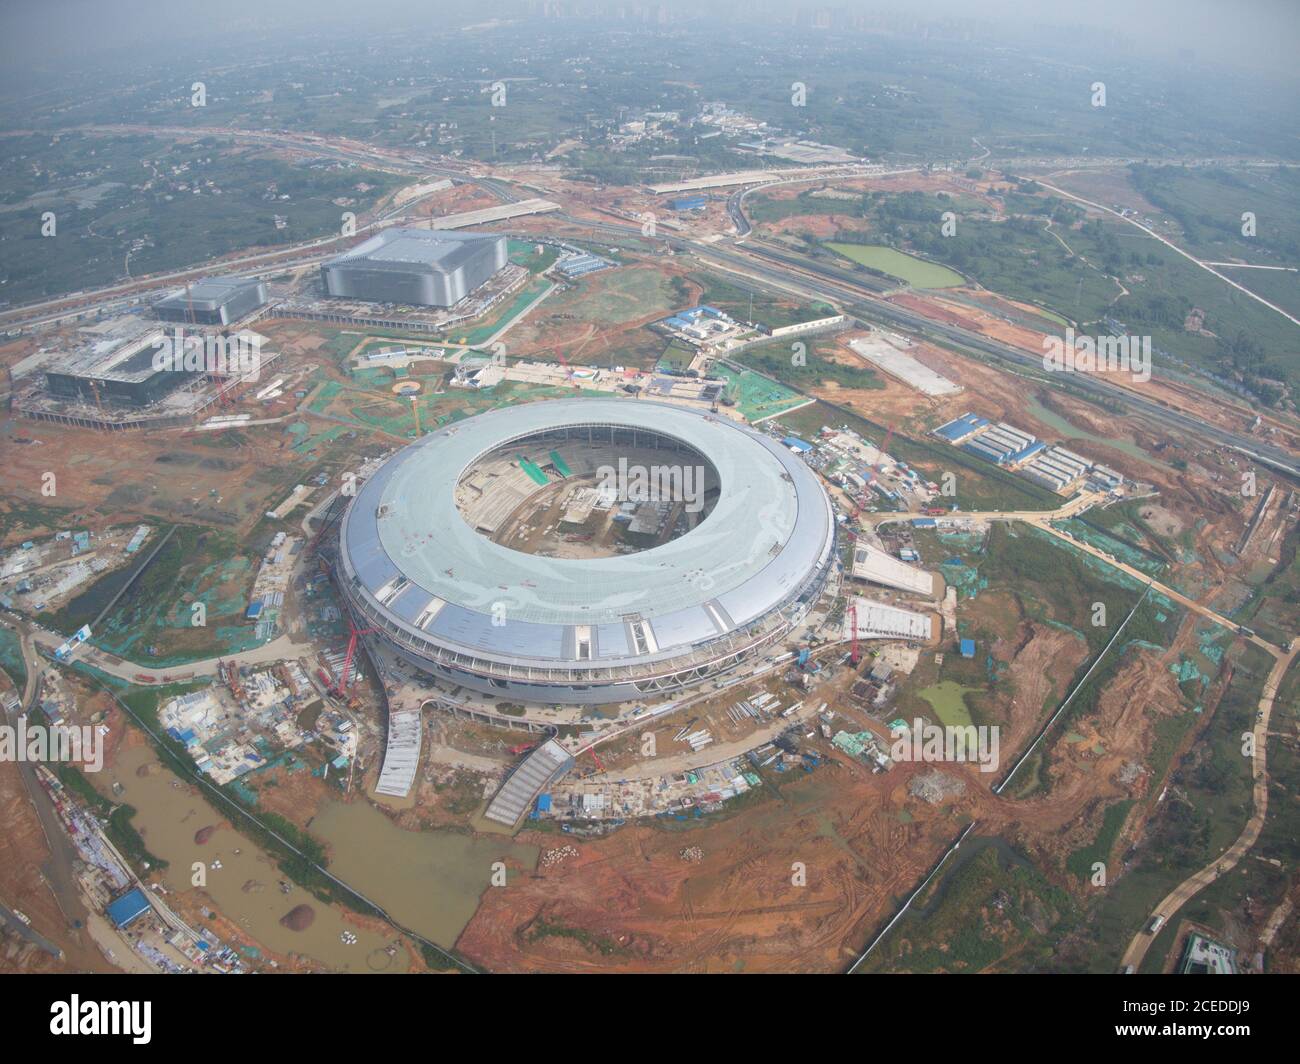 Une vue aérienne du stade de 40,000 capacités, qui sera le stade principal de l'Universiade d'été 2021, en cours de construction, ville de Chengdu, province du Sichuan, au sud-ouest de la Chine, 21 août 2020. Banque D'Images